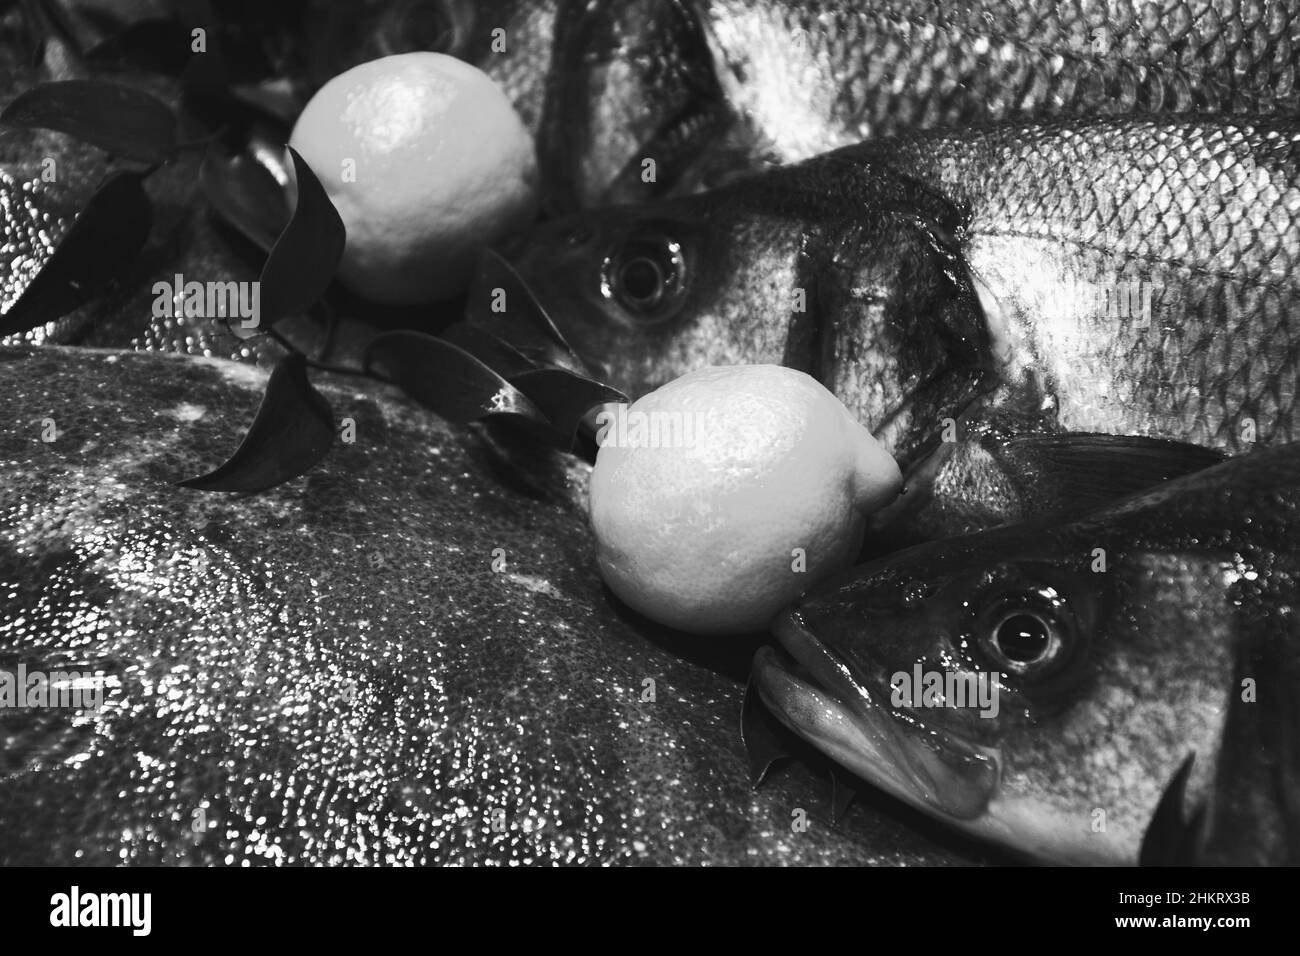 Europäischer Bass und Brill zum Verkauf und Fischmarkt in Frankreich. Fische haben wichtige Nährstoffe wie Eiweiß, Vitamin D und Omega-3. Gesunde Ernährung Konzept. Bl Stockfoto